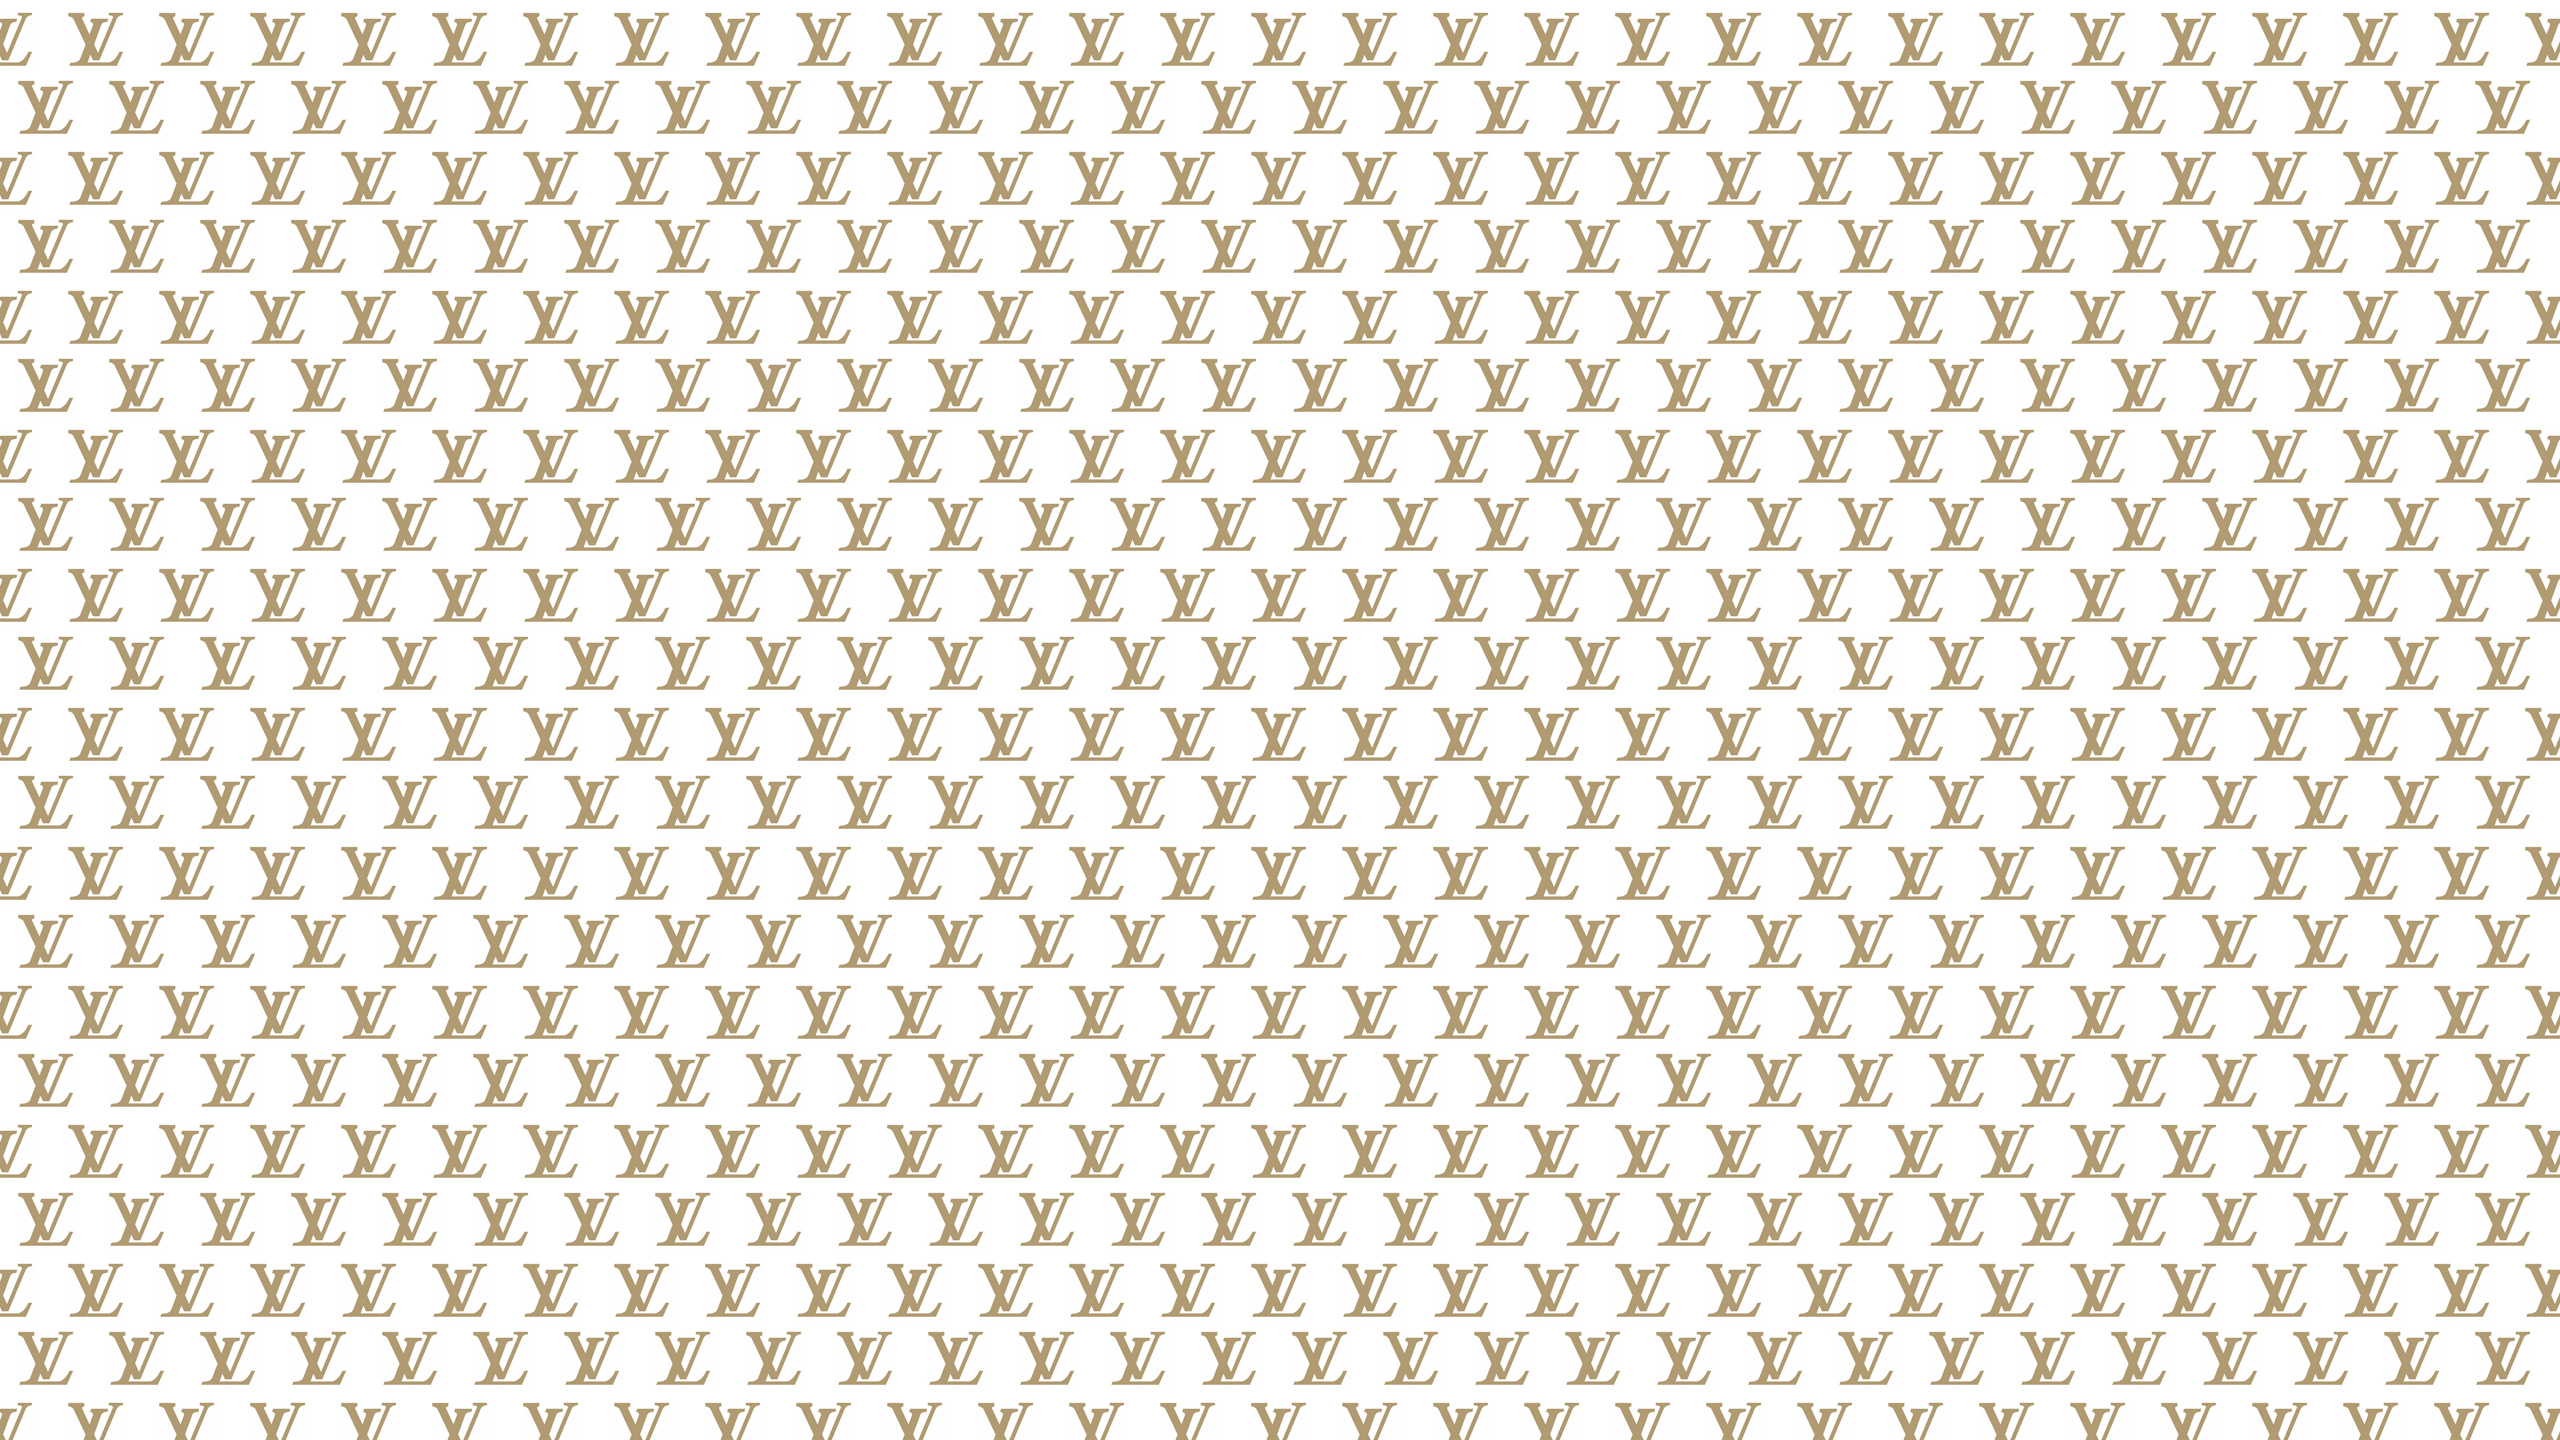 Louis Vuitton Wallpaper. Gold Louis Vuitton Desktop Wallpaper is